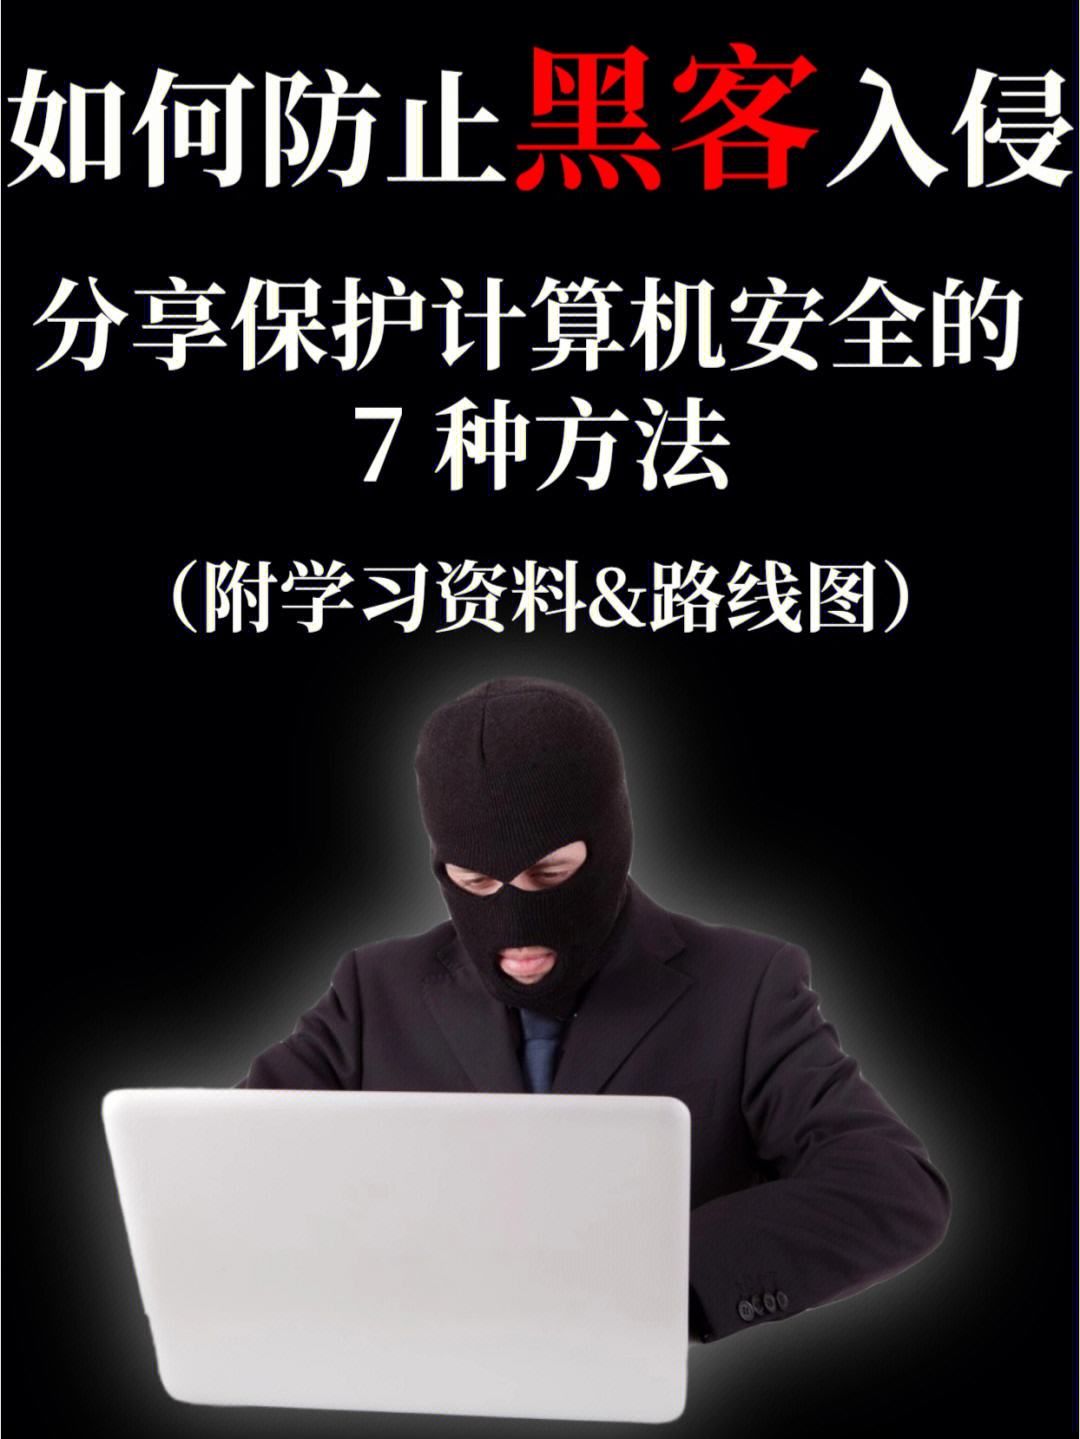 黑客网络安全知识(黑客网络安全知识培训)